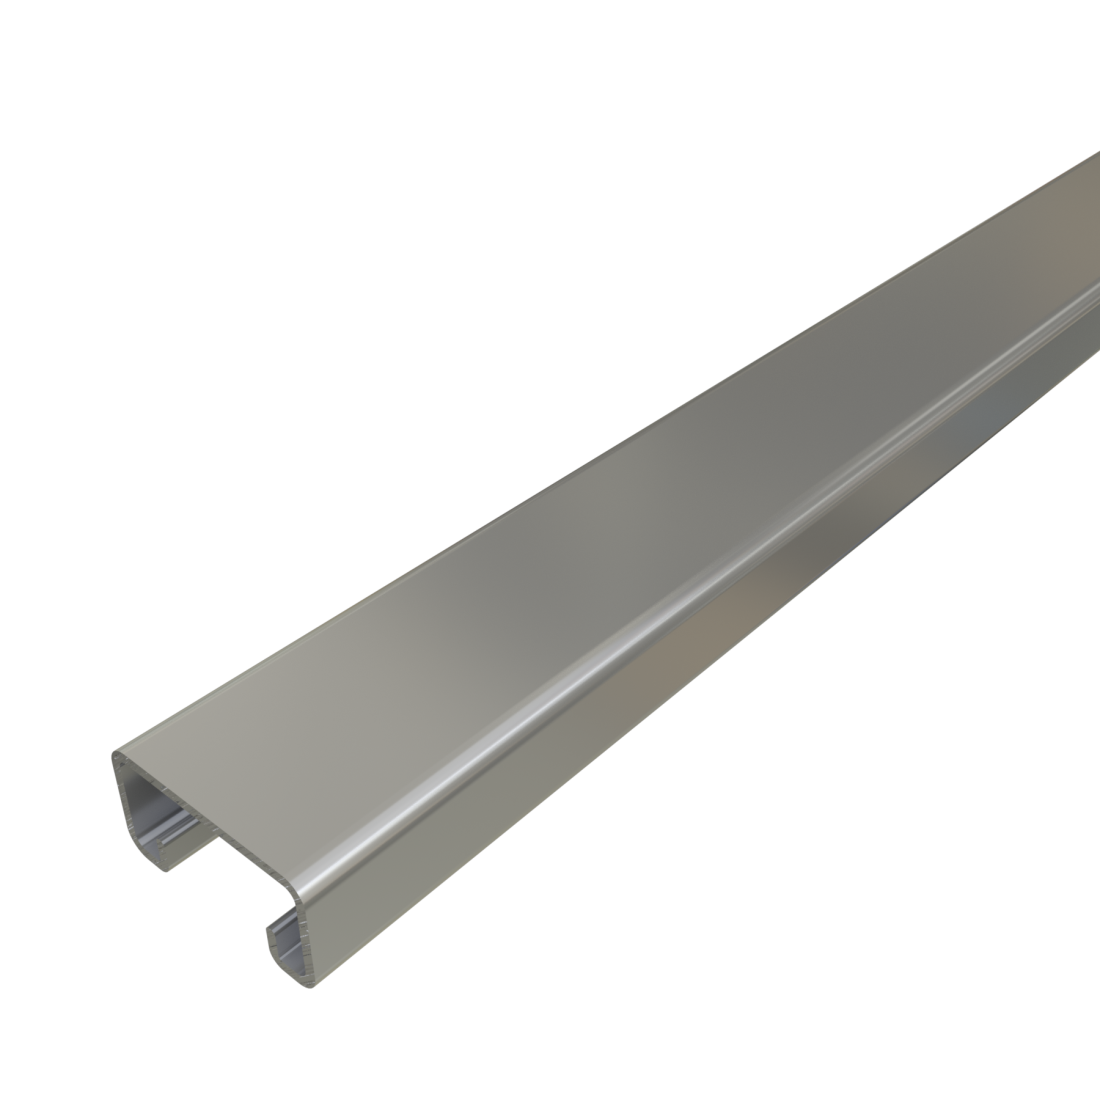 Unistrut P4100 - 1-5/8" x 13/16", 14 Gauge Metal Framing Strut, Solid